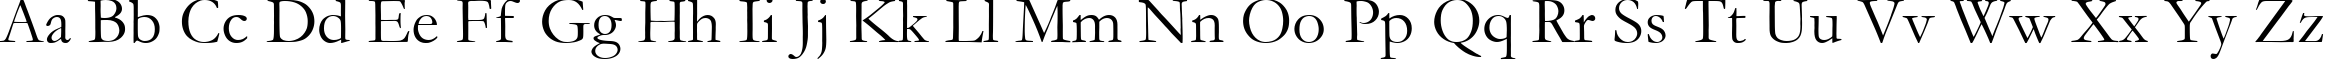 Пример написания английского алфавита шрифтом font252